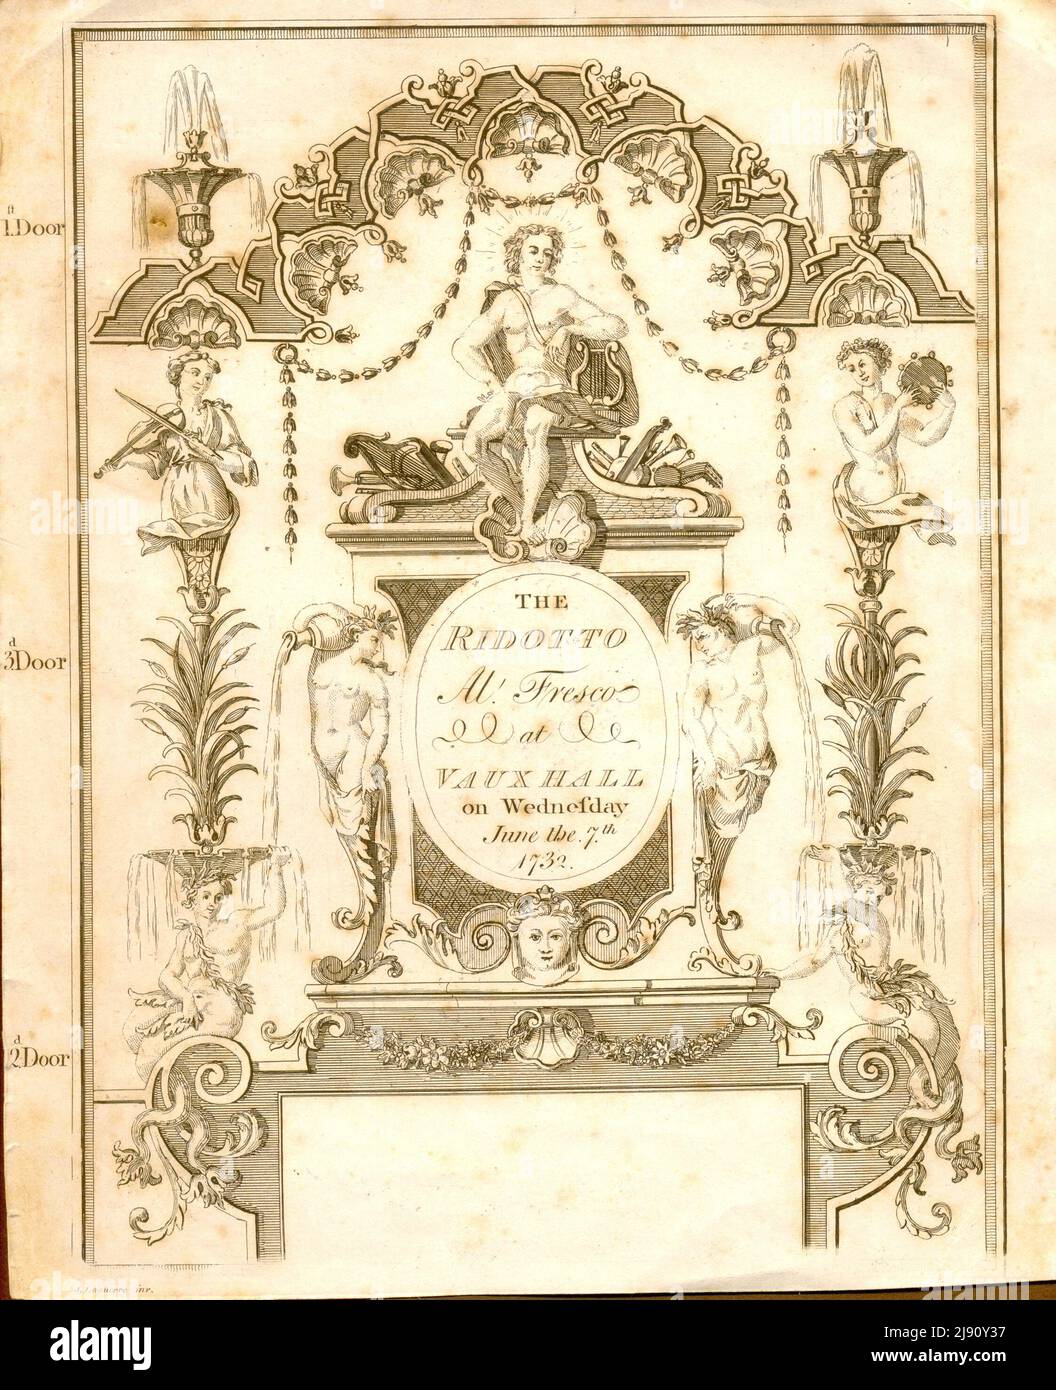 Eintrittskarte für das Ridotto Al Fresco in Vauxhall [London] am Mittwoch, den 7. 1732. Juni Stockfoto